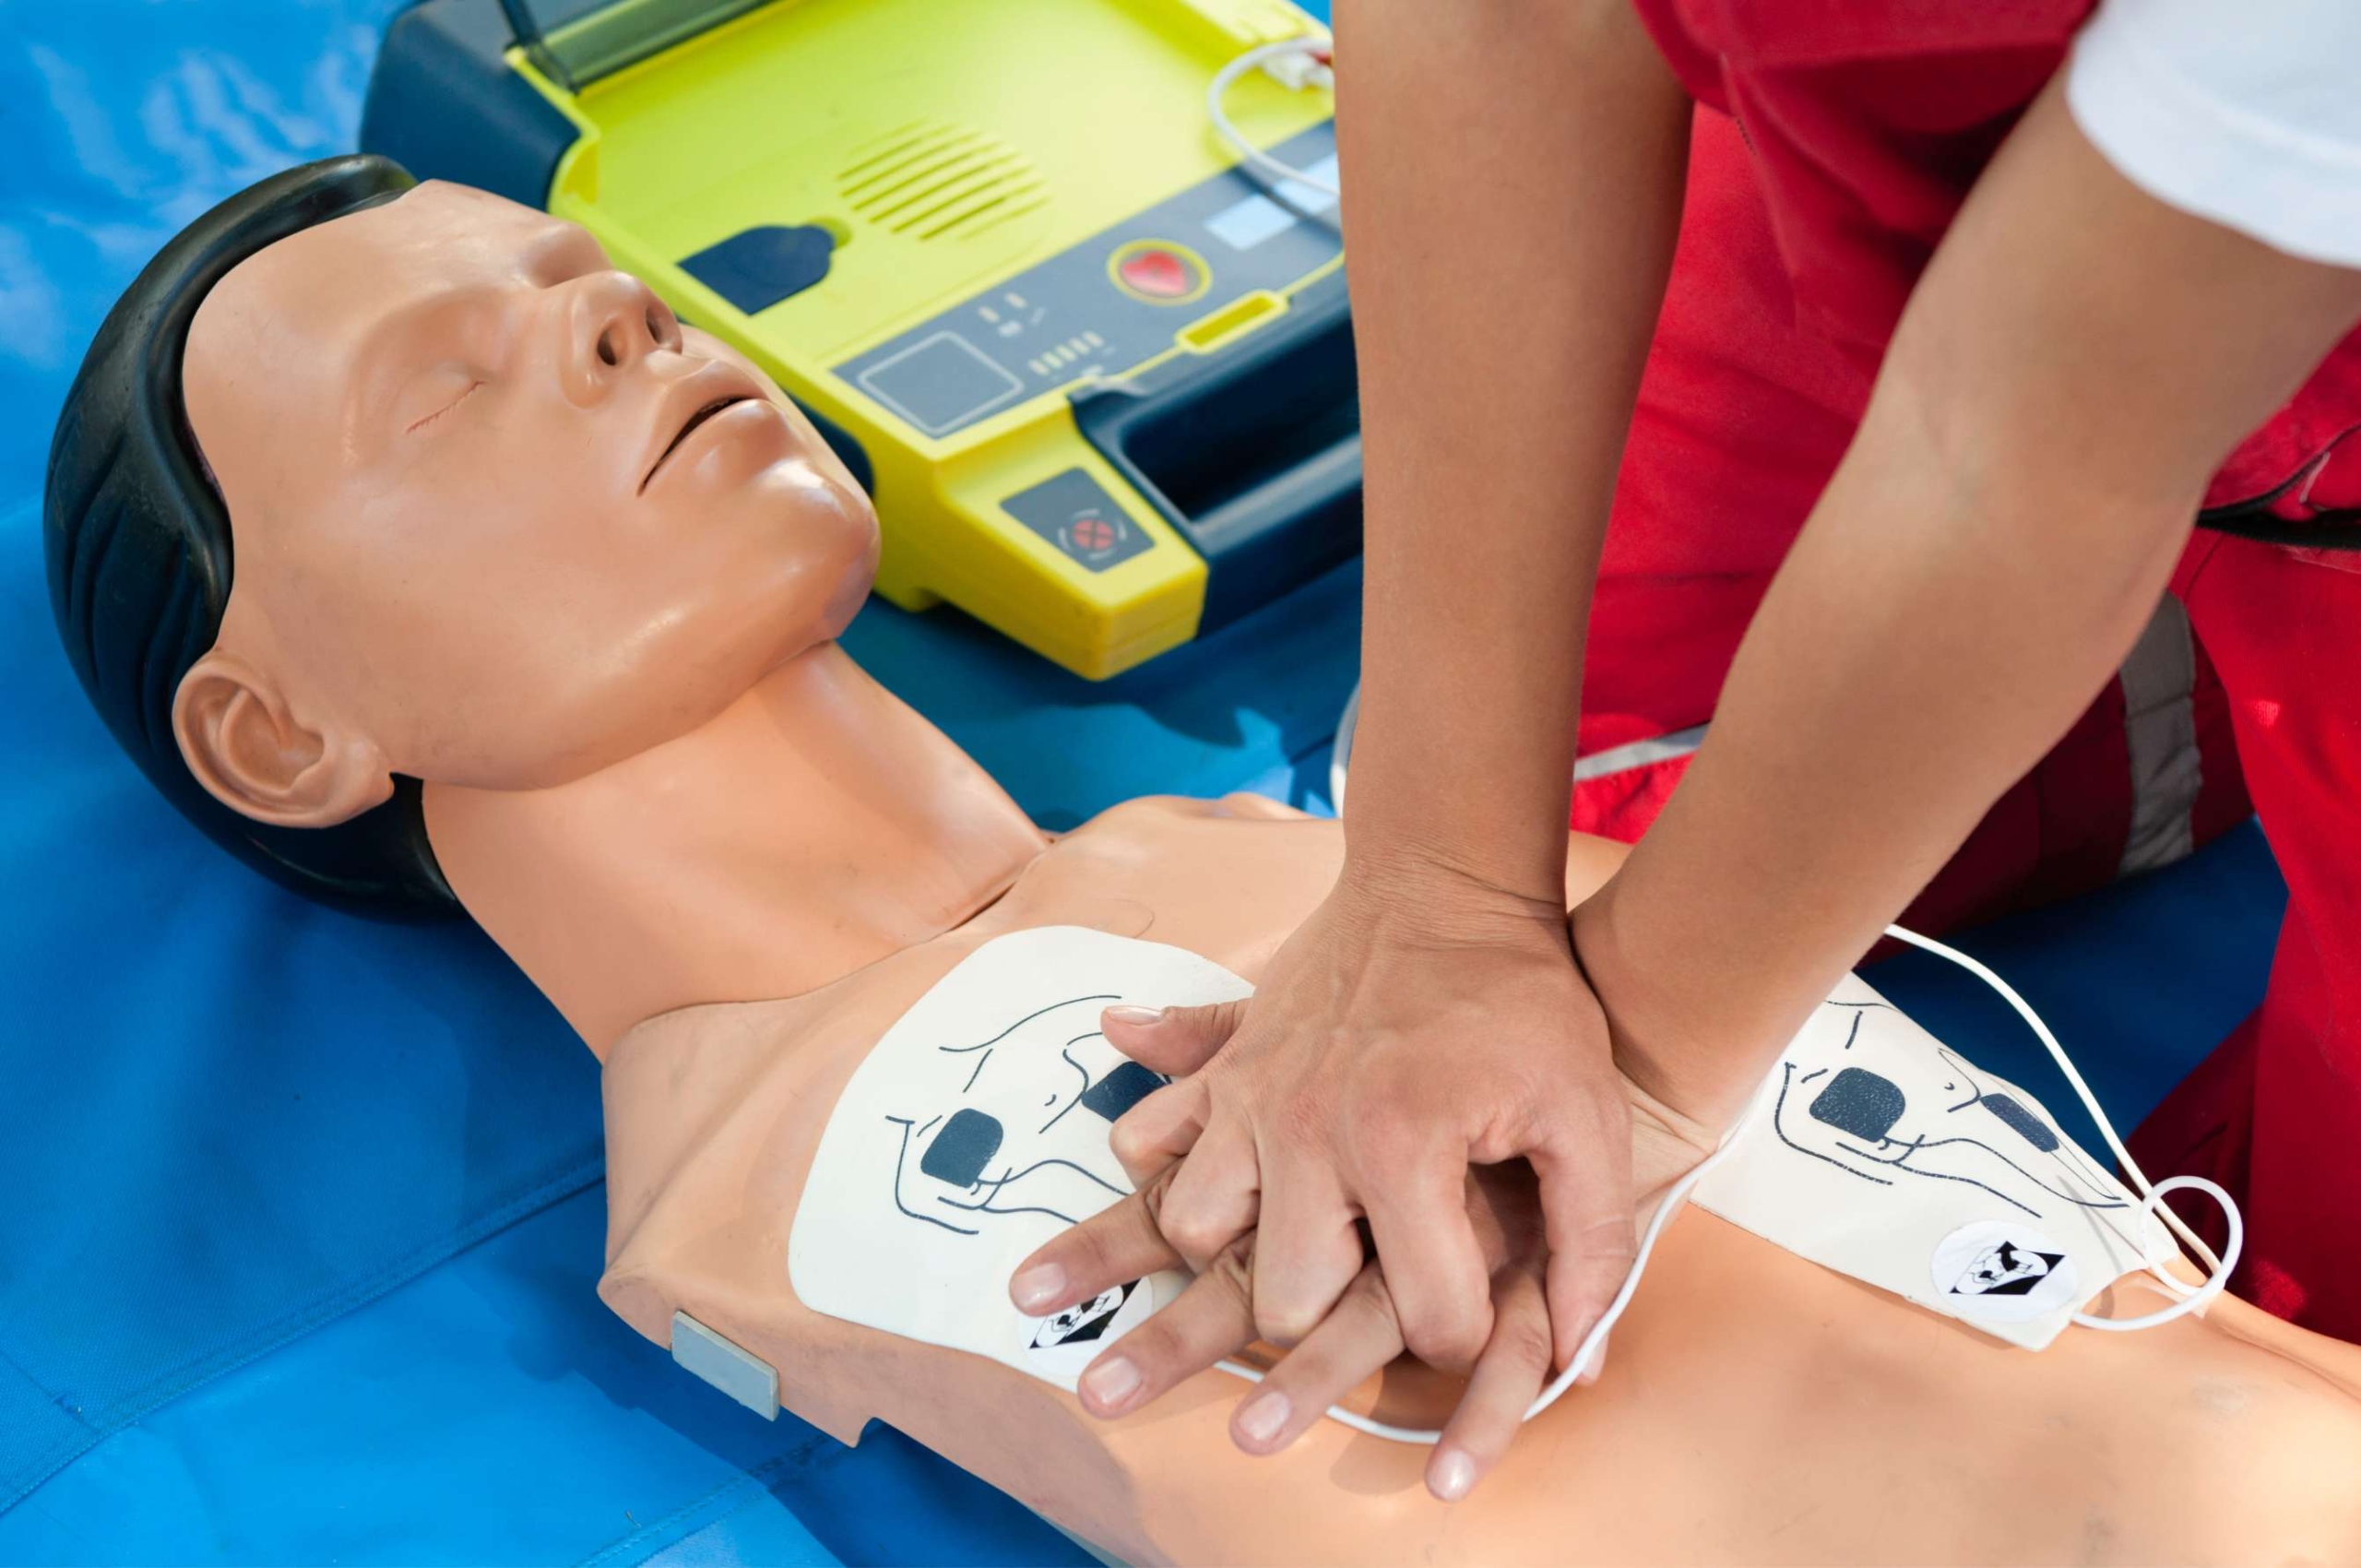 Foulden defibrillator training